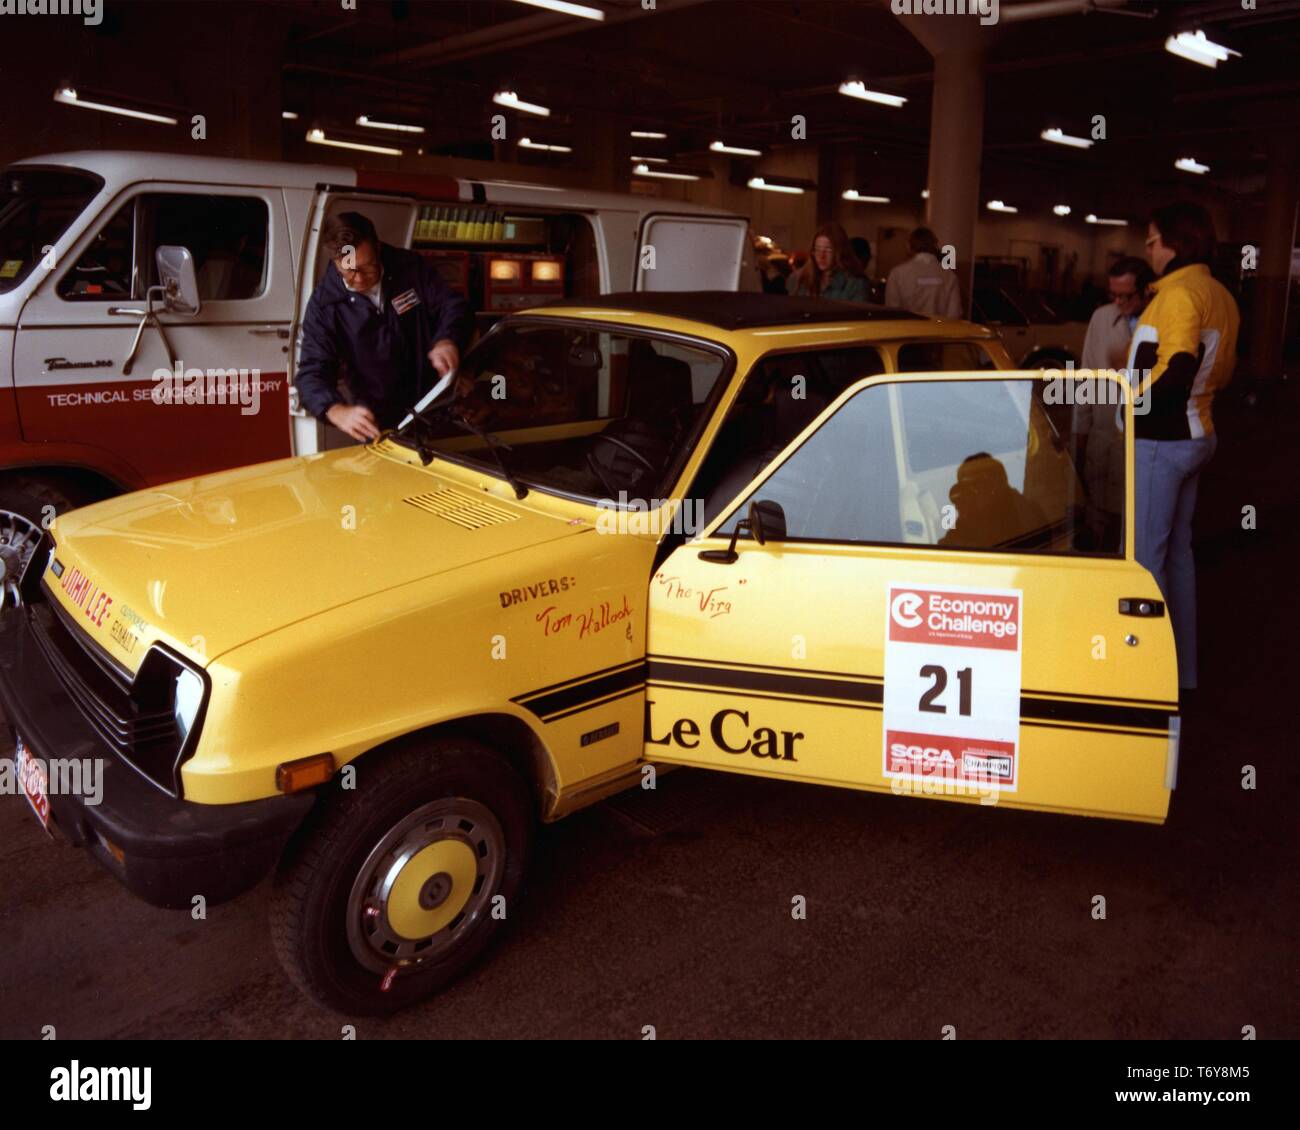 Un funzionario esamina una Renault 5 (Le auto) dopo un rendimento del carburante la guida evento, 1975. Immagine cortesia del Dipartimento Americano di Energia. () Foto Stock